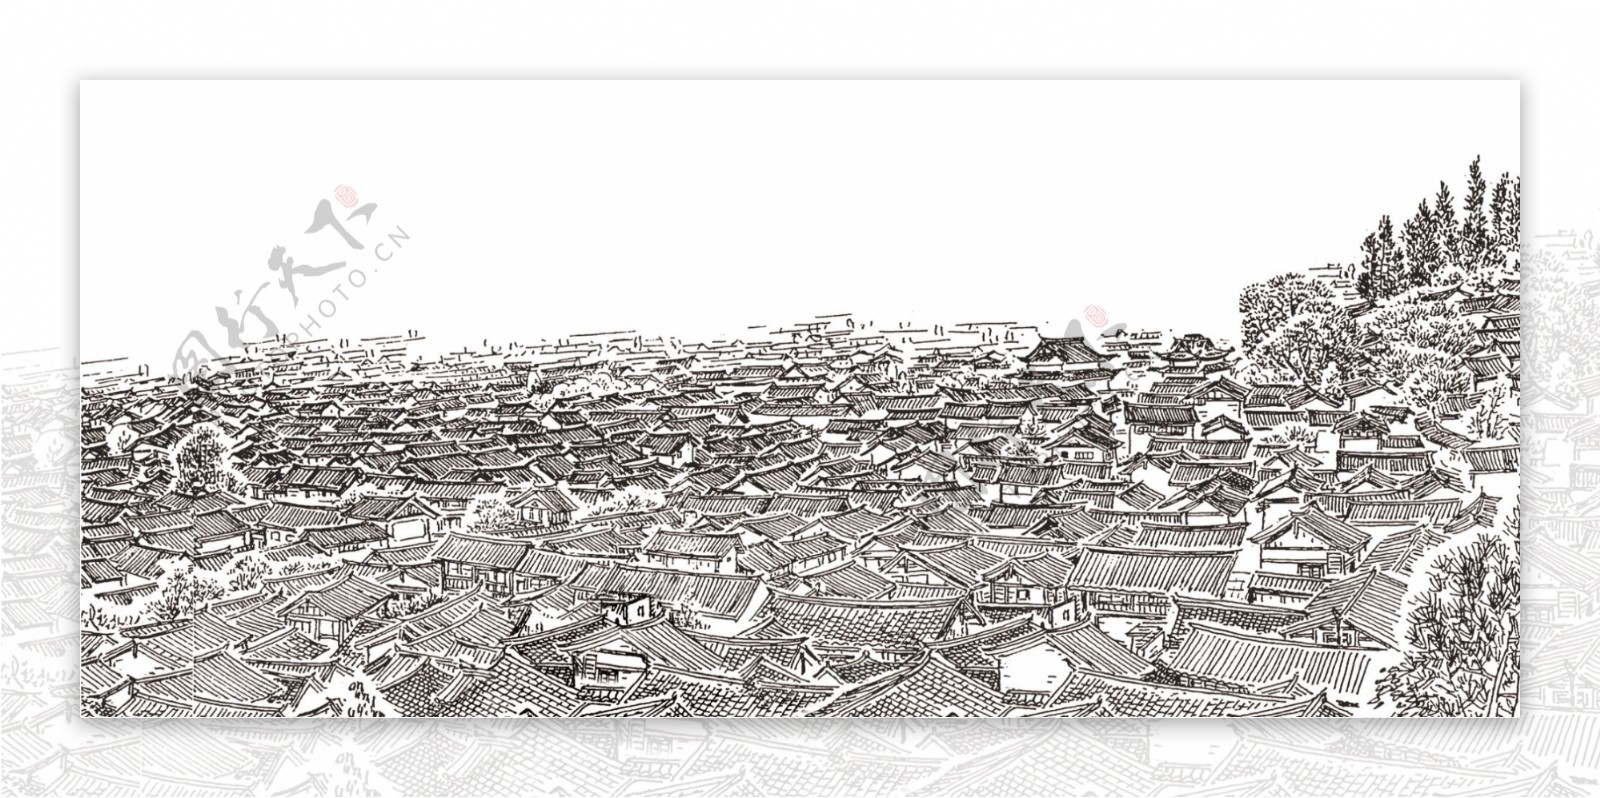 丽江古城之瓦房合层图片